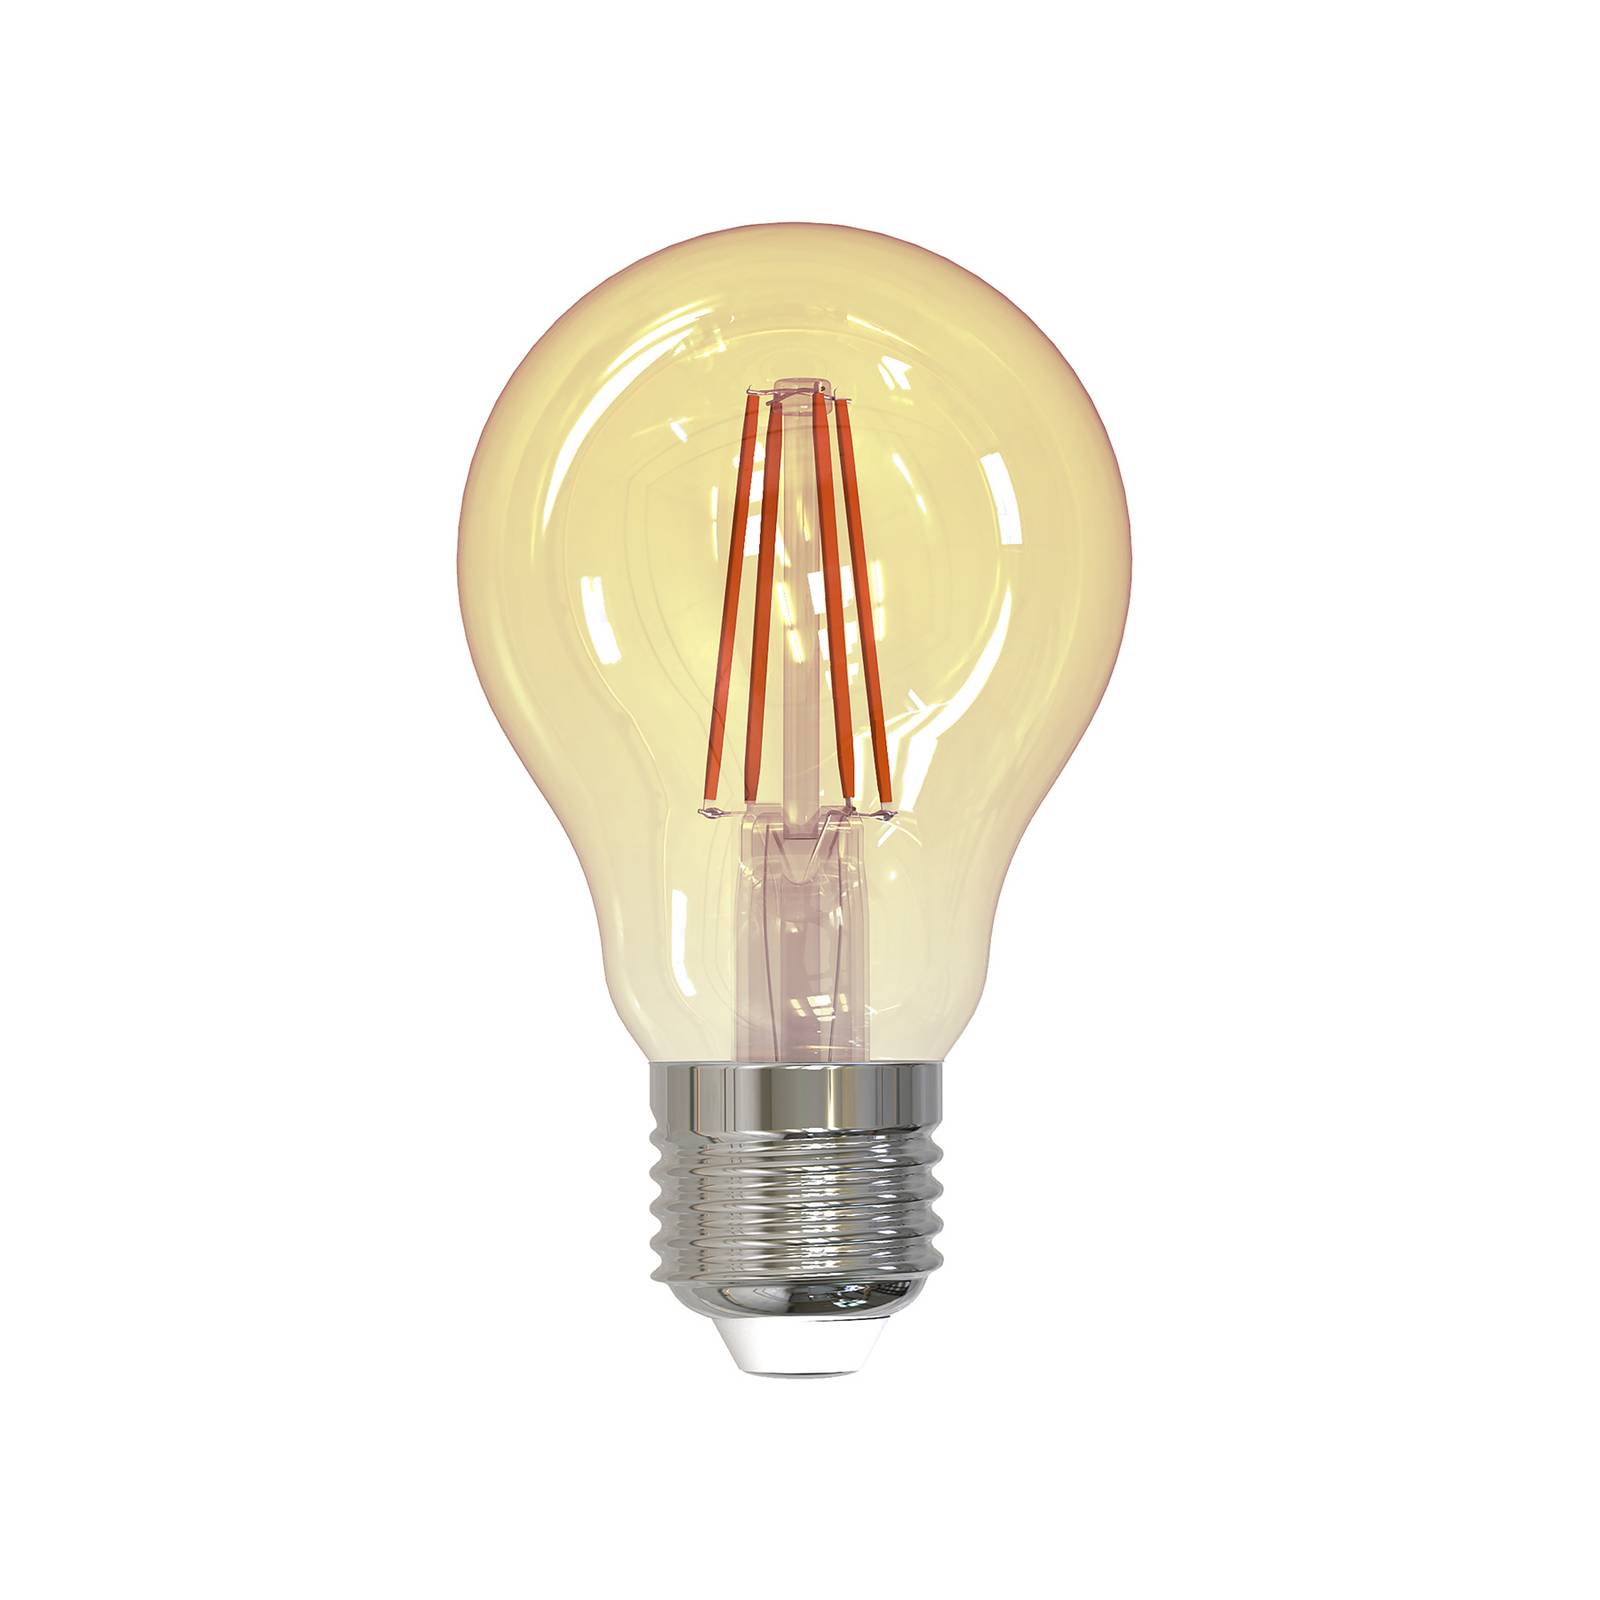 Müller-Licht LED žárovka E27 4,5W 2 000K 400lm zlaté barvy